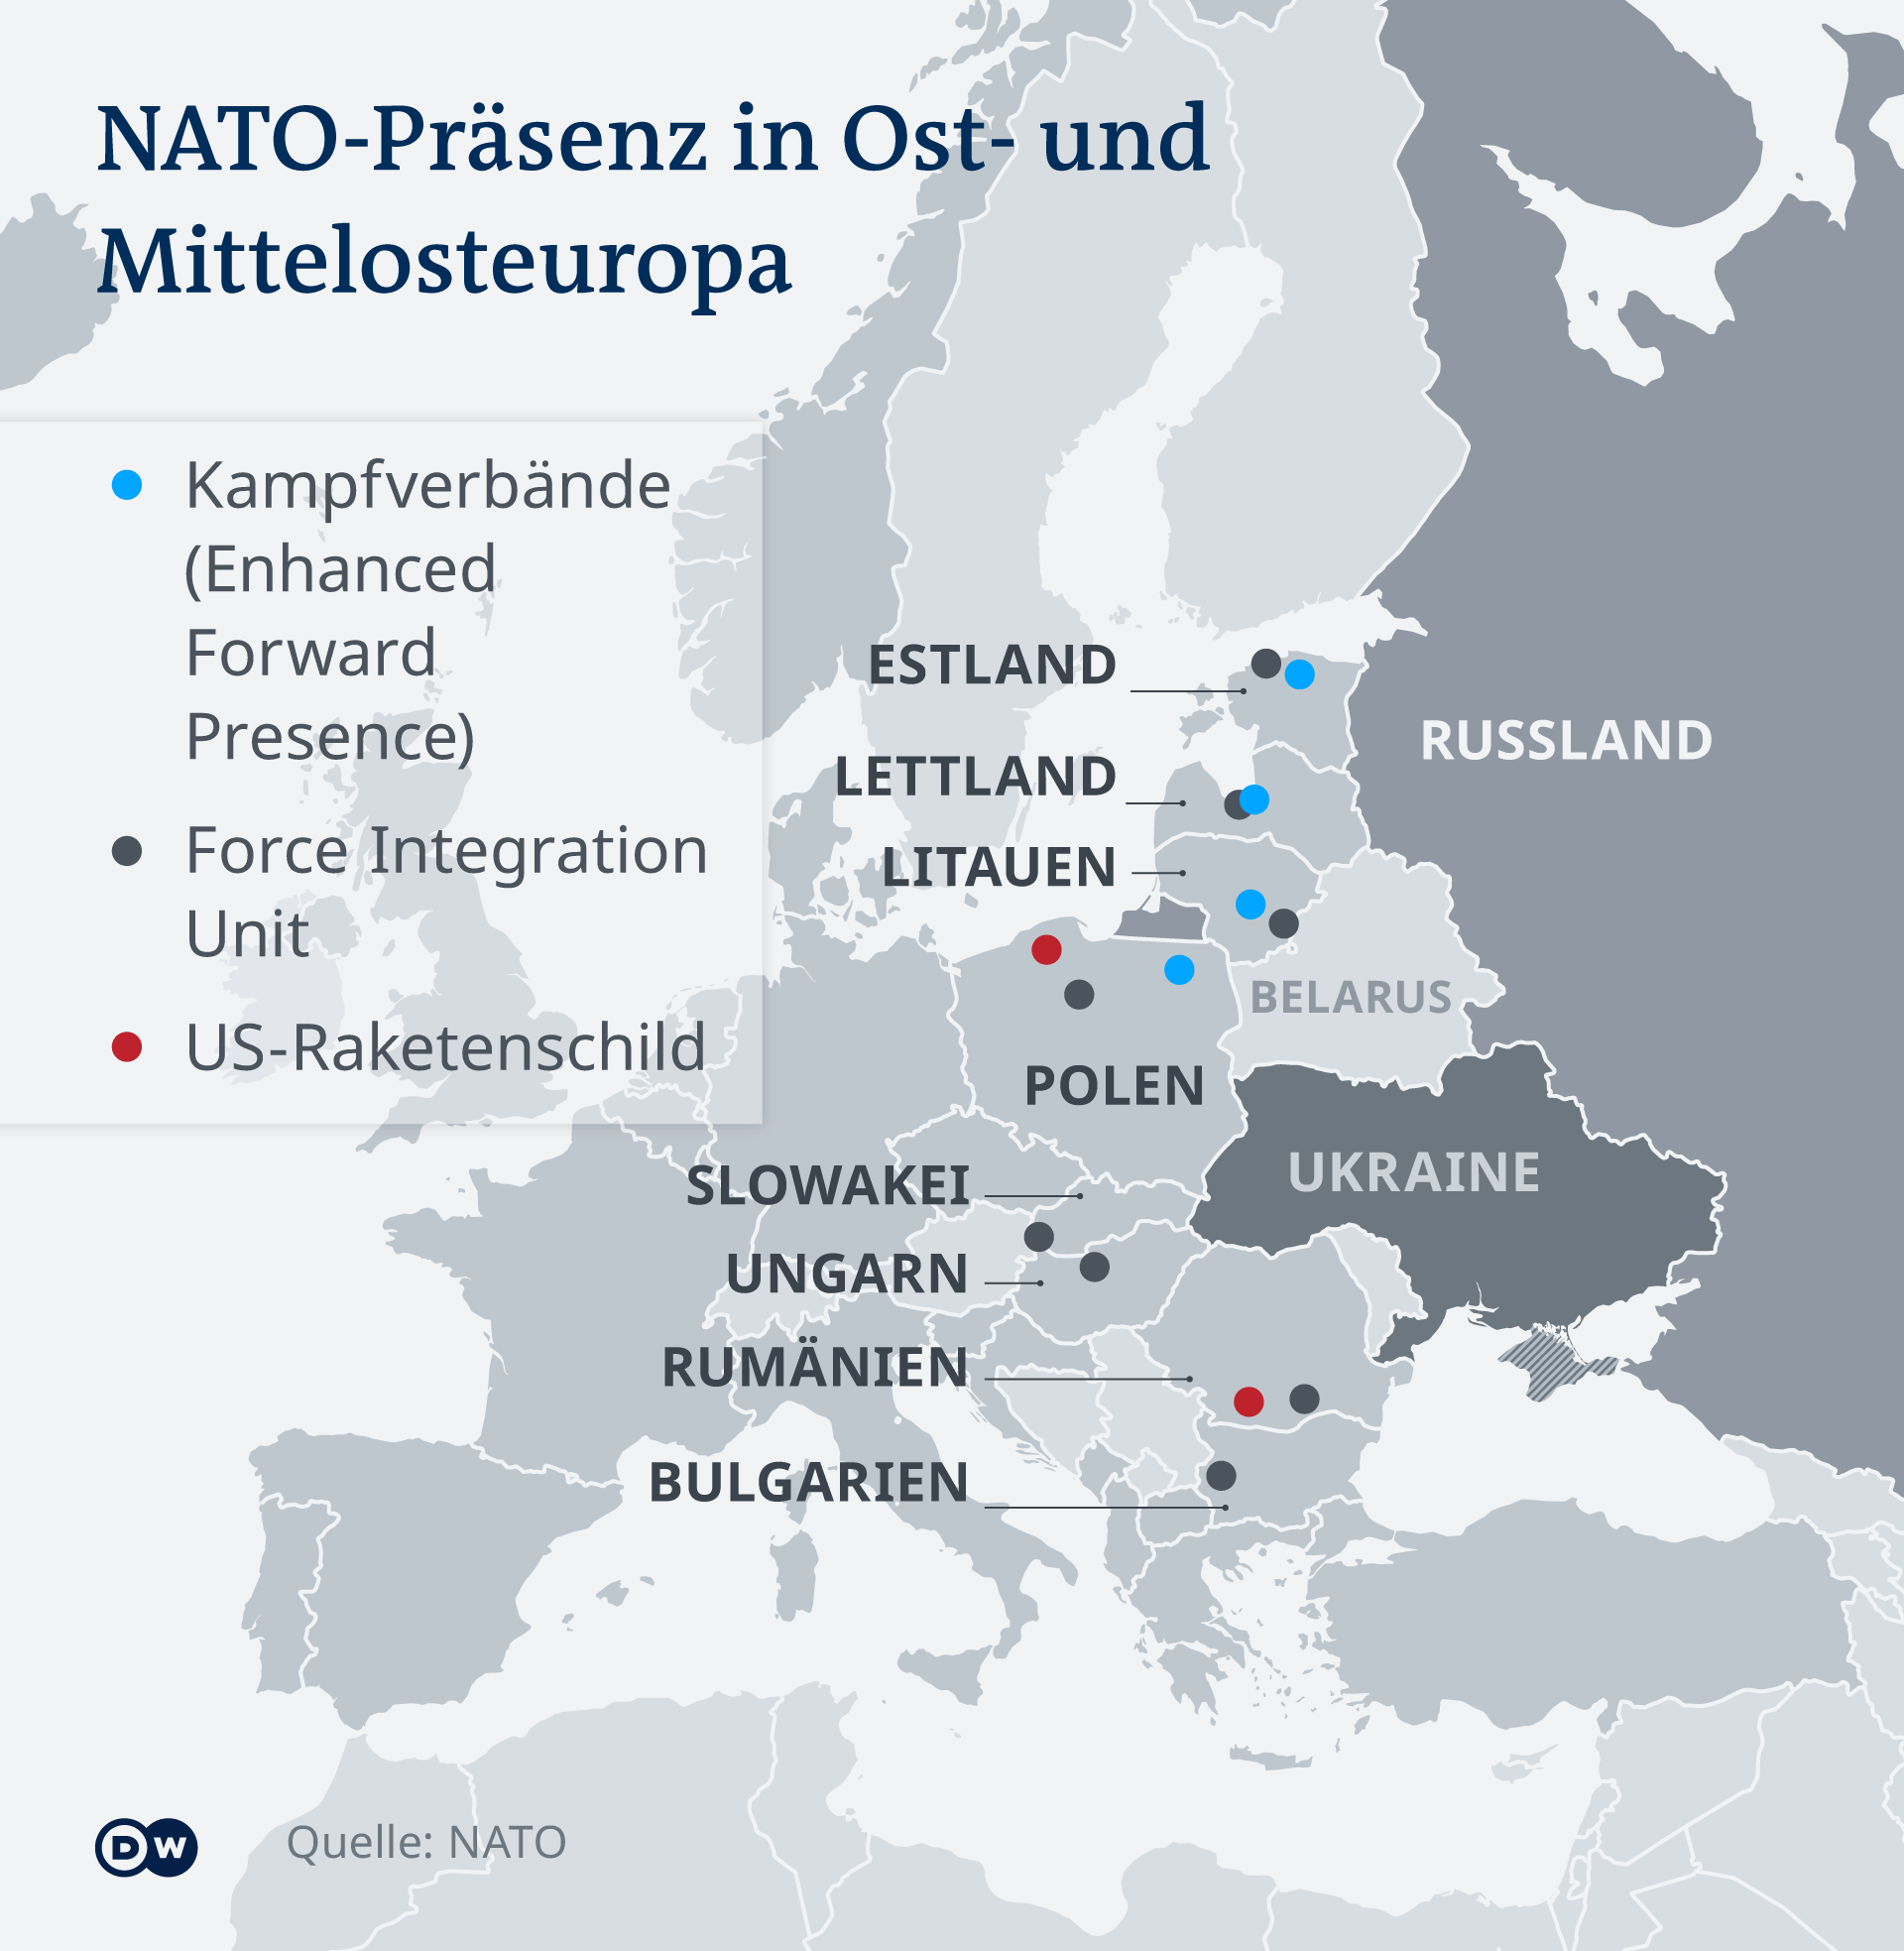 Eine Infografik zur NATO-Präsenz in Osteuropa